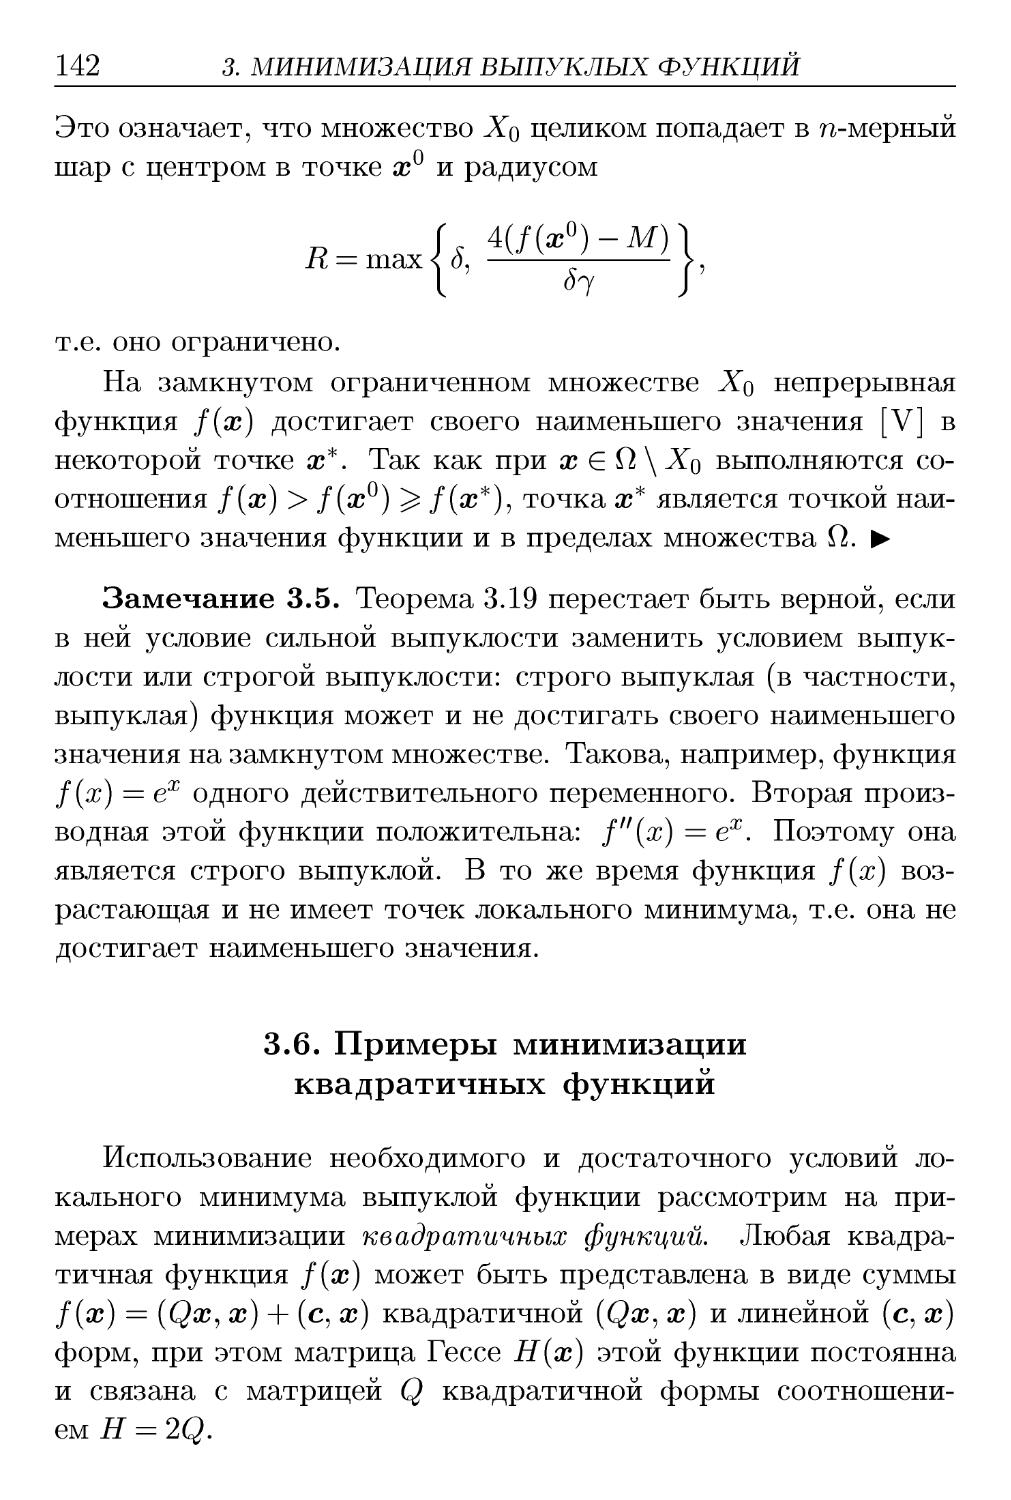 3.6. Примеры минимизации квадратичных функций